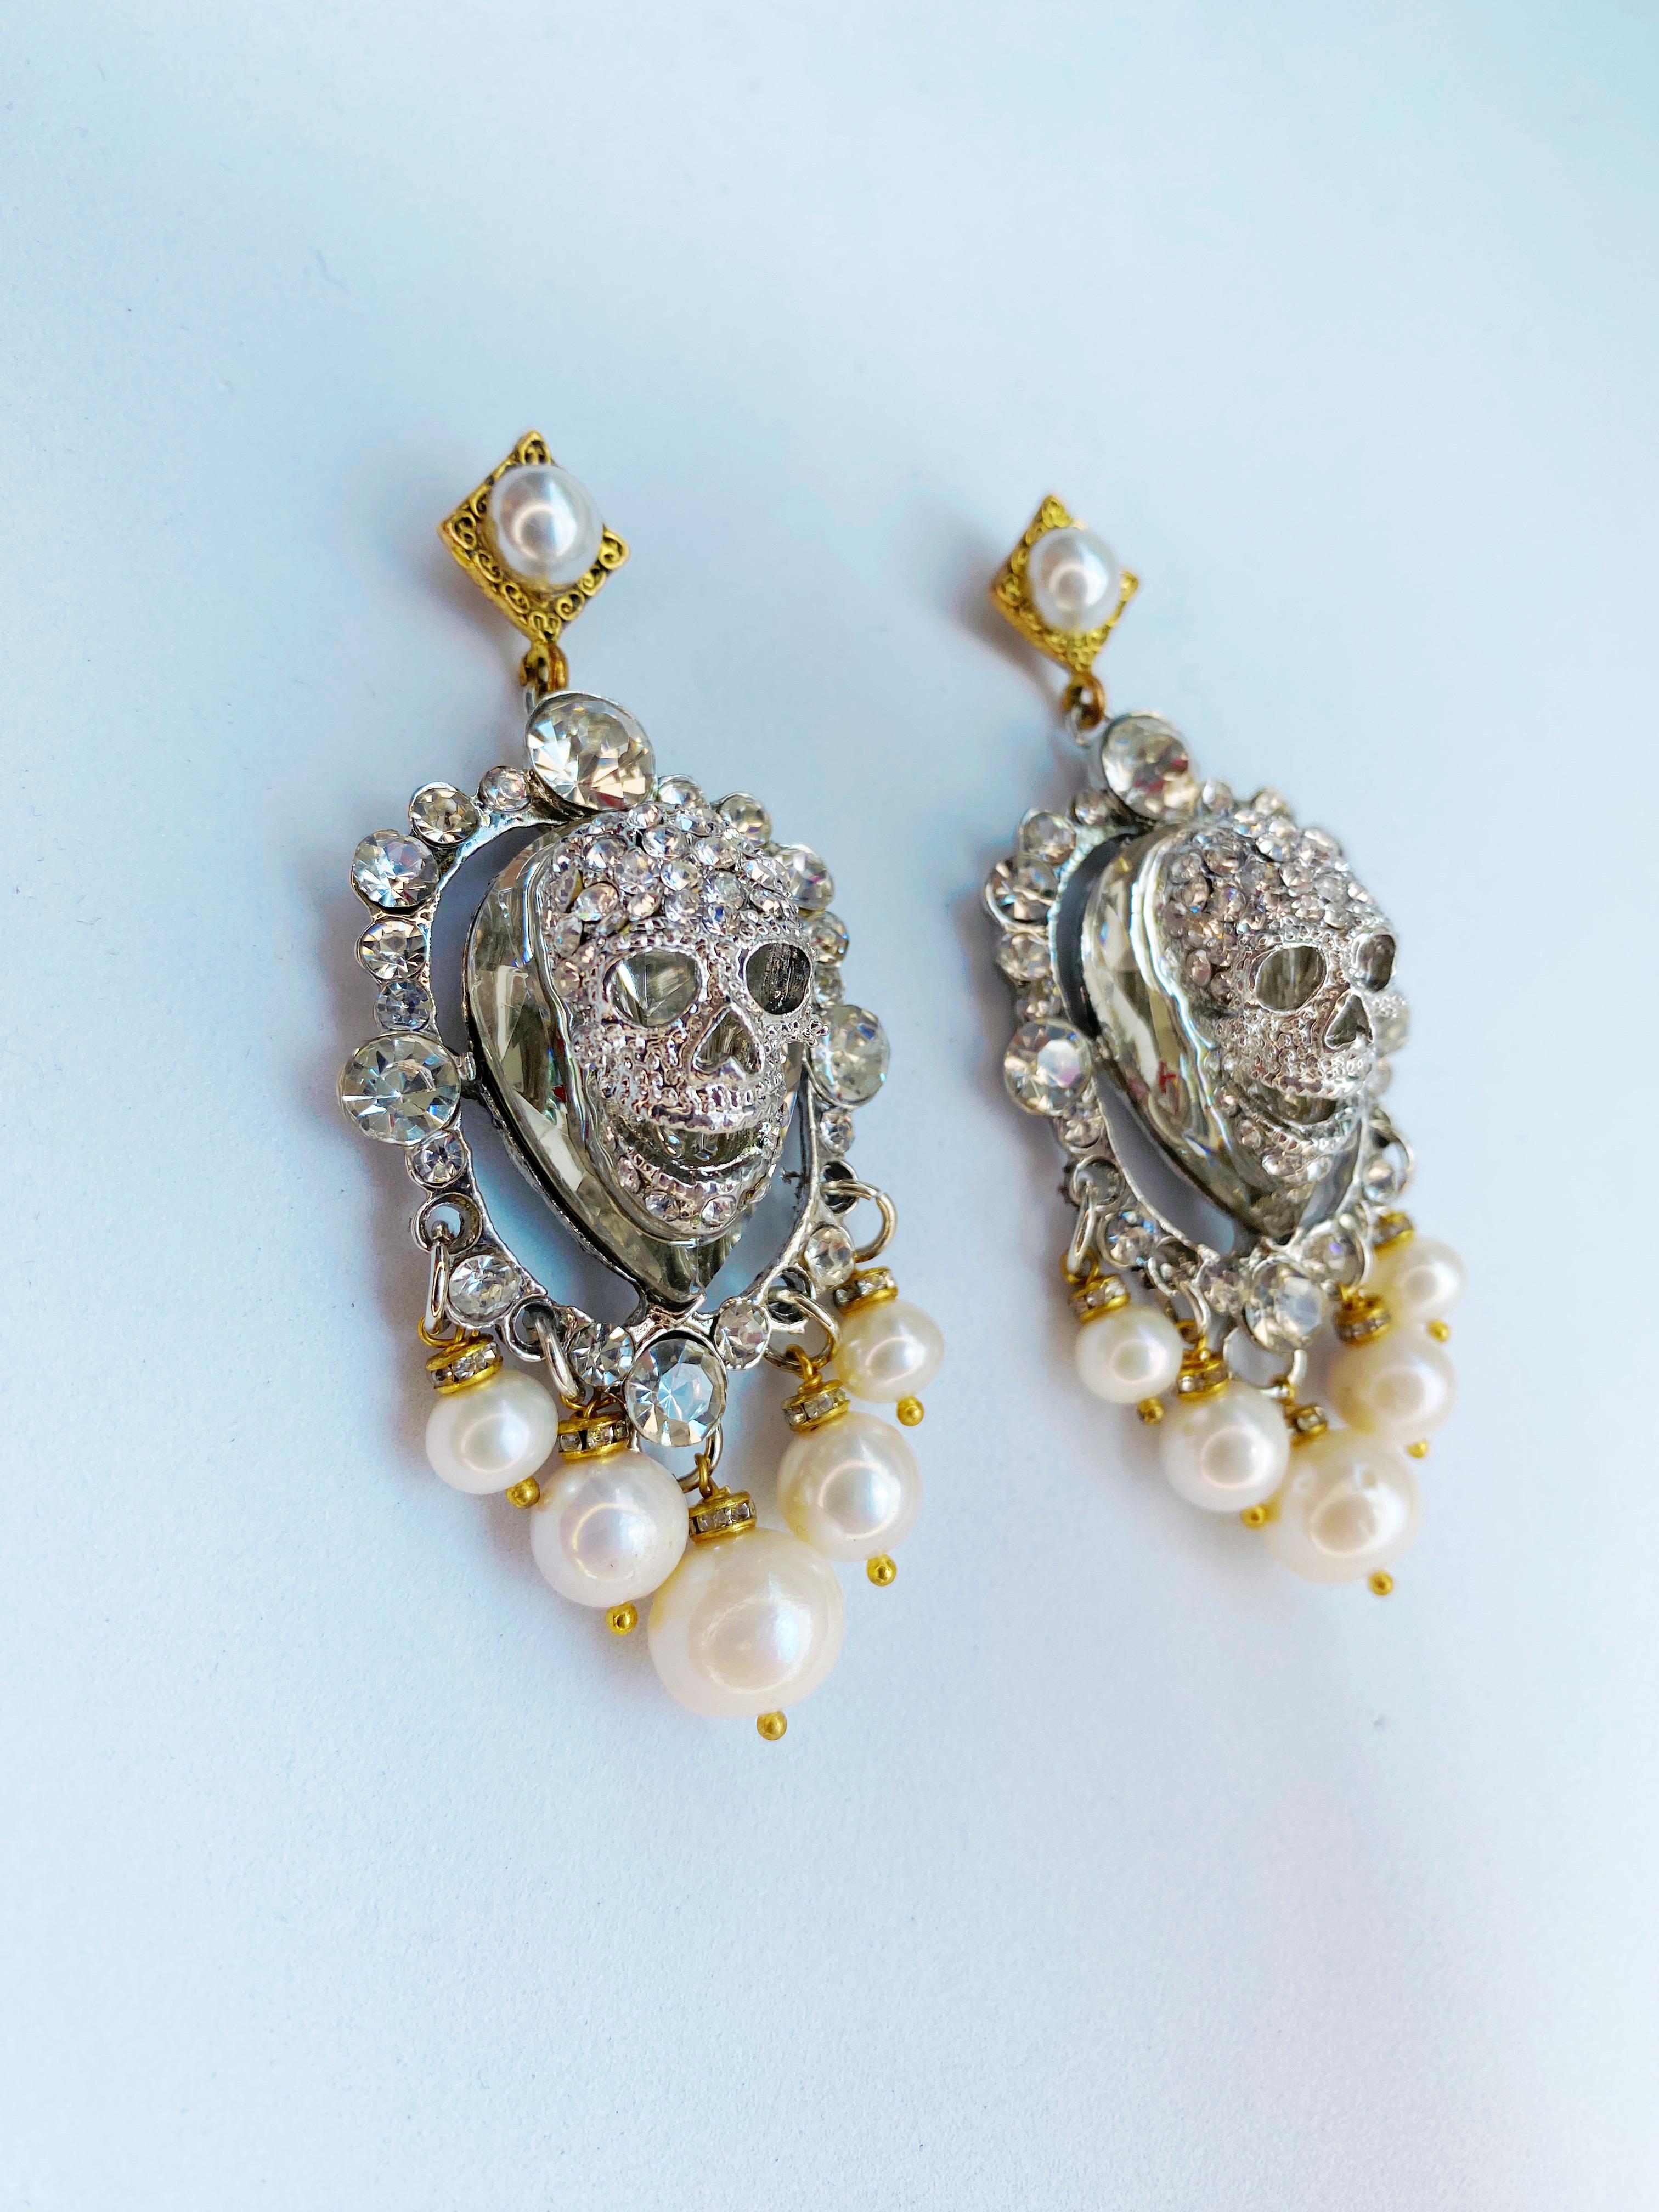 Ces superbes boucles d'oreilles d'inspiration Louis XIV de Sebastian Jaramillo sont ornées de cristaux Swarovski et de perles d'eau douce. Elegant, mais suffisamment audacieux pour se démarquer de la foule.